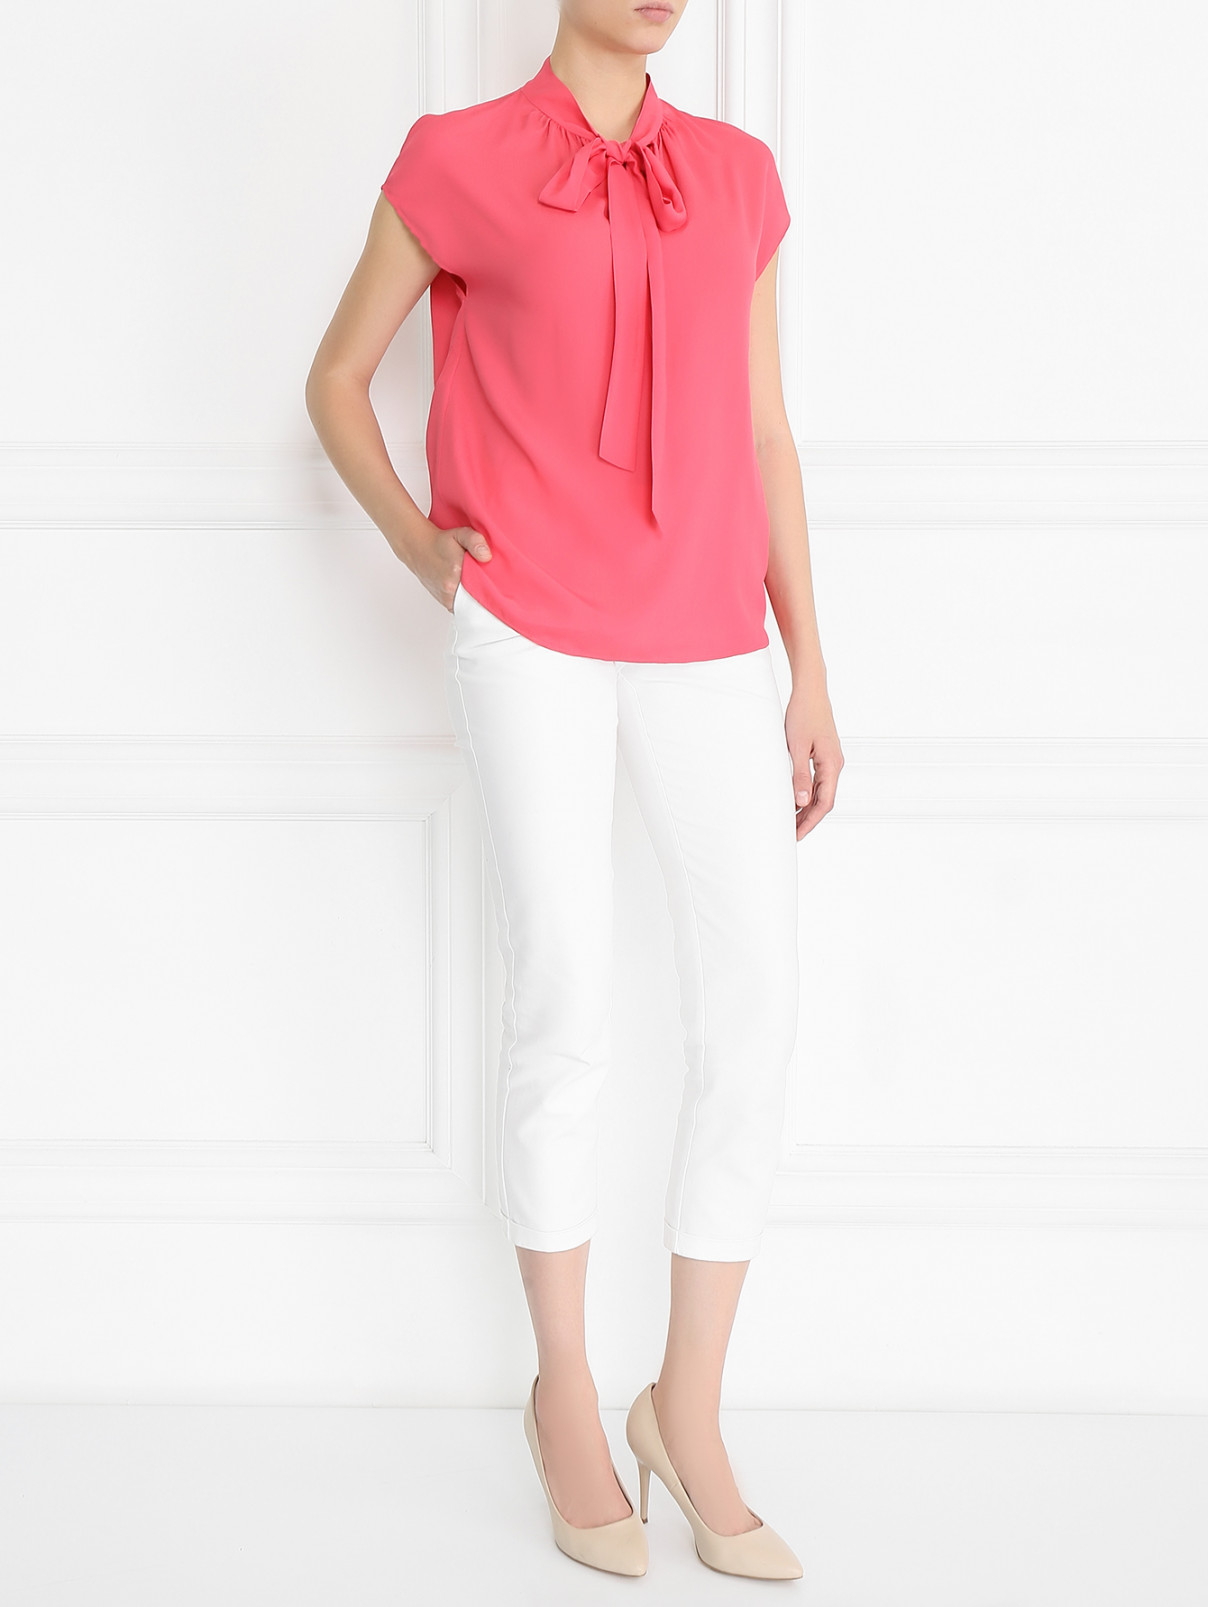 Блуза из вискозы и шелка Moschino Boutique  –  Модель Общий вид  – Цвет:  Розовый